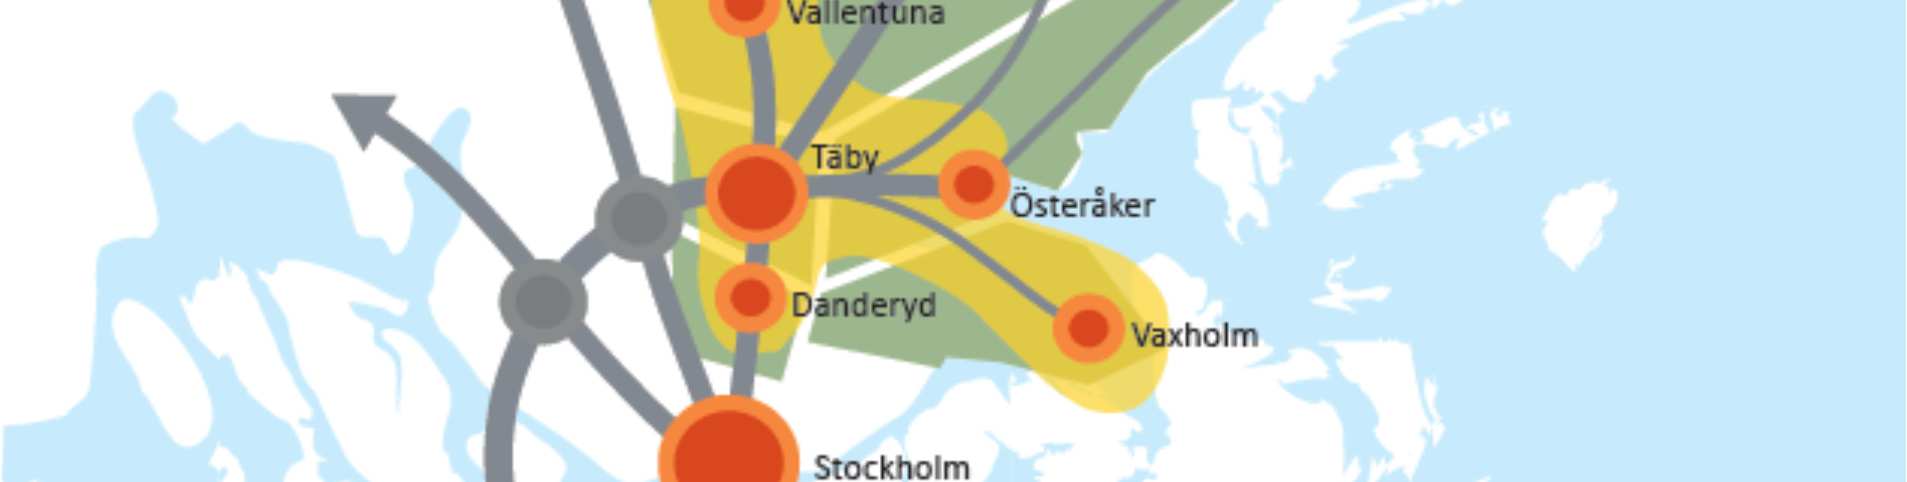 Nordostsektorn knyts till E4-stråket, Arlanda Uppsala samt till övriga regionala stadskärnor inklusive Stockholms centrala delar. Täby centrum - Arninge blir sektorns gemensamma stadskärna.